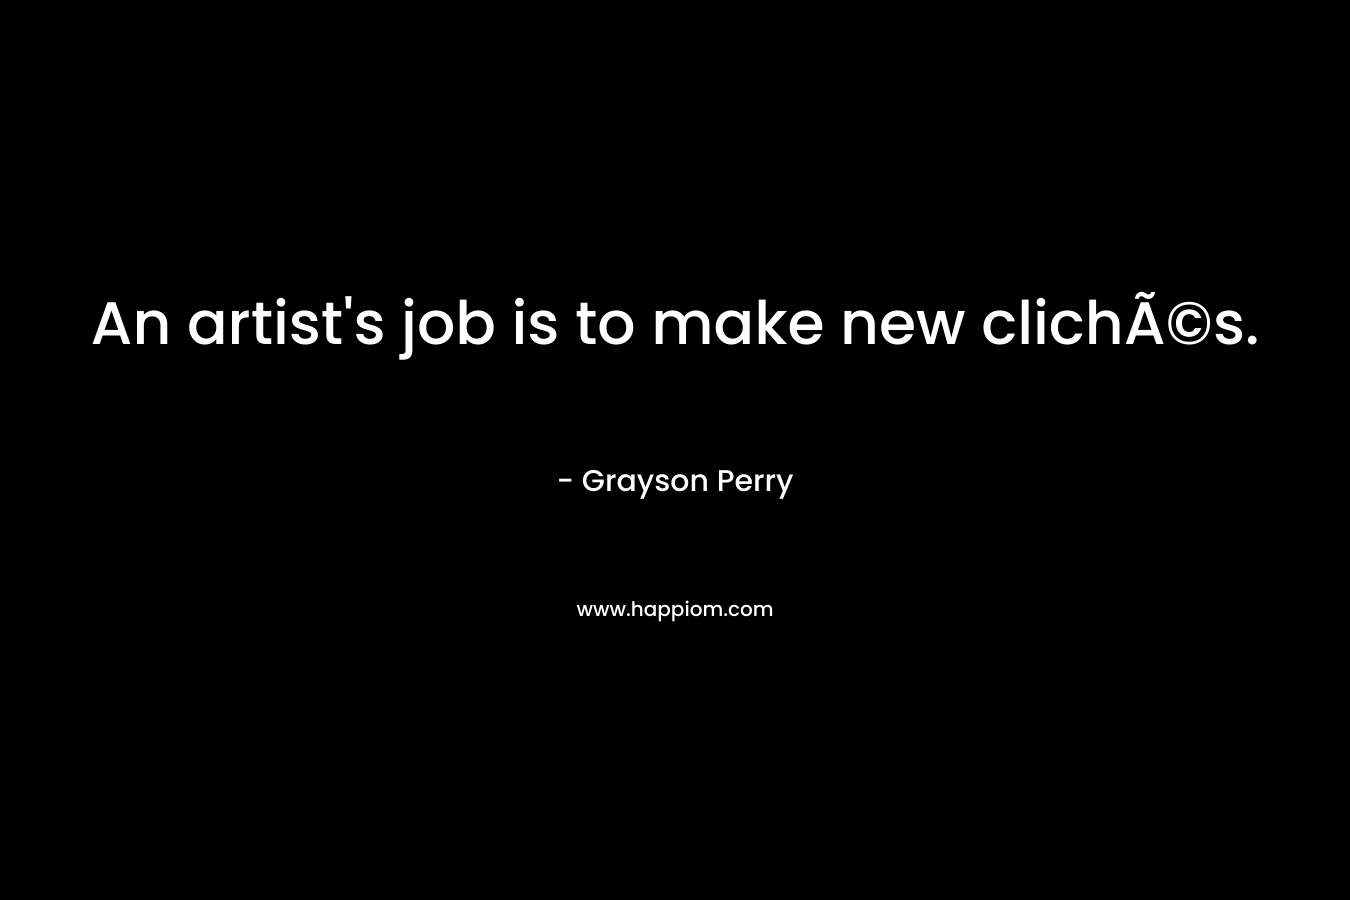 An artist's job is to make new clichÃ©s.